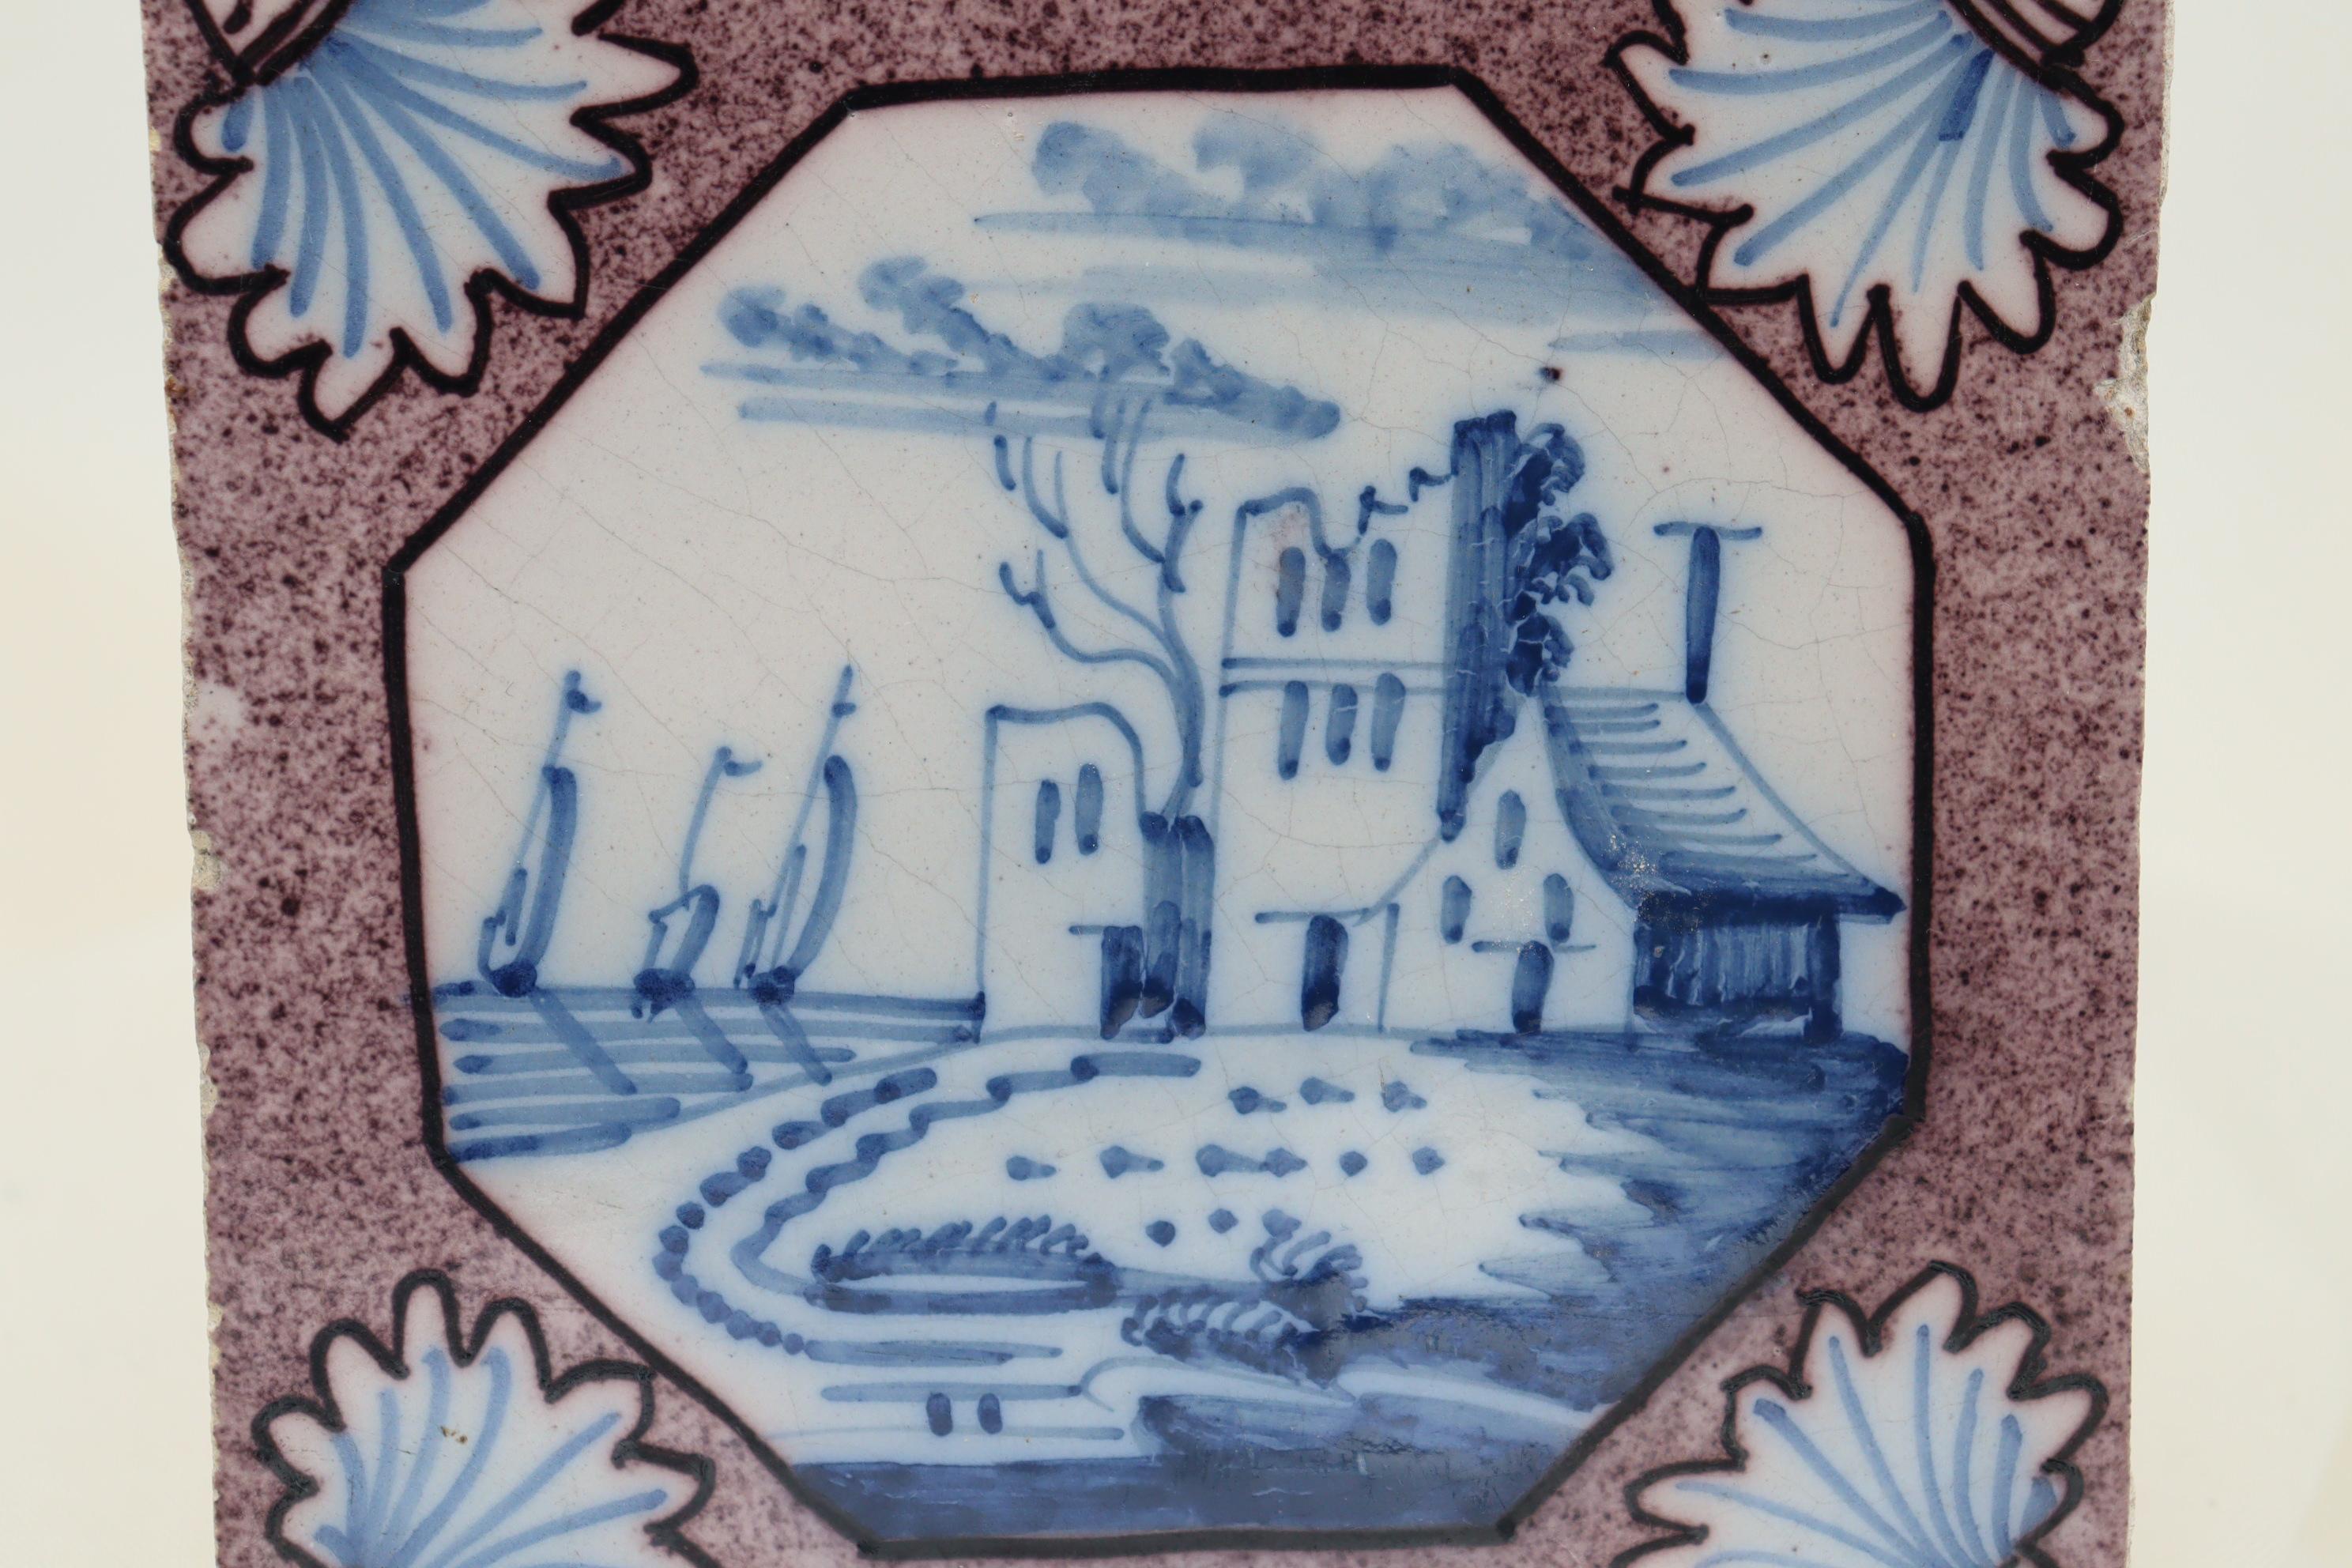 Die zentrale Dekoration auf dieser holländischen Fliese ist eine handgemalte Szene eines großen Hauses mit drei Schiffen im Hintergrund, alles in Blau auf der weißen Fliese. Die achteckige Kartusche ist von einem gesprenkelten violetten Grund mit